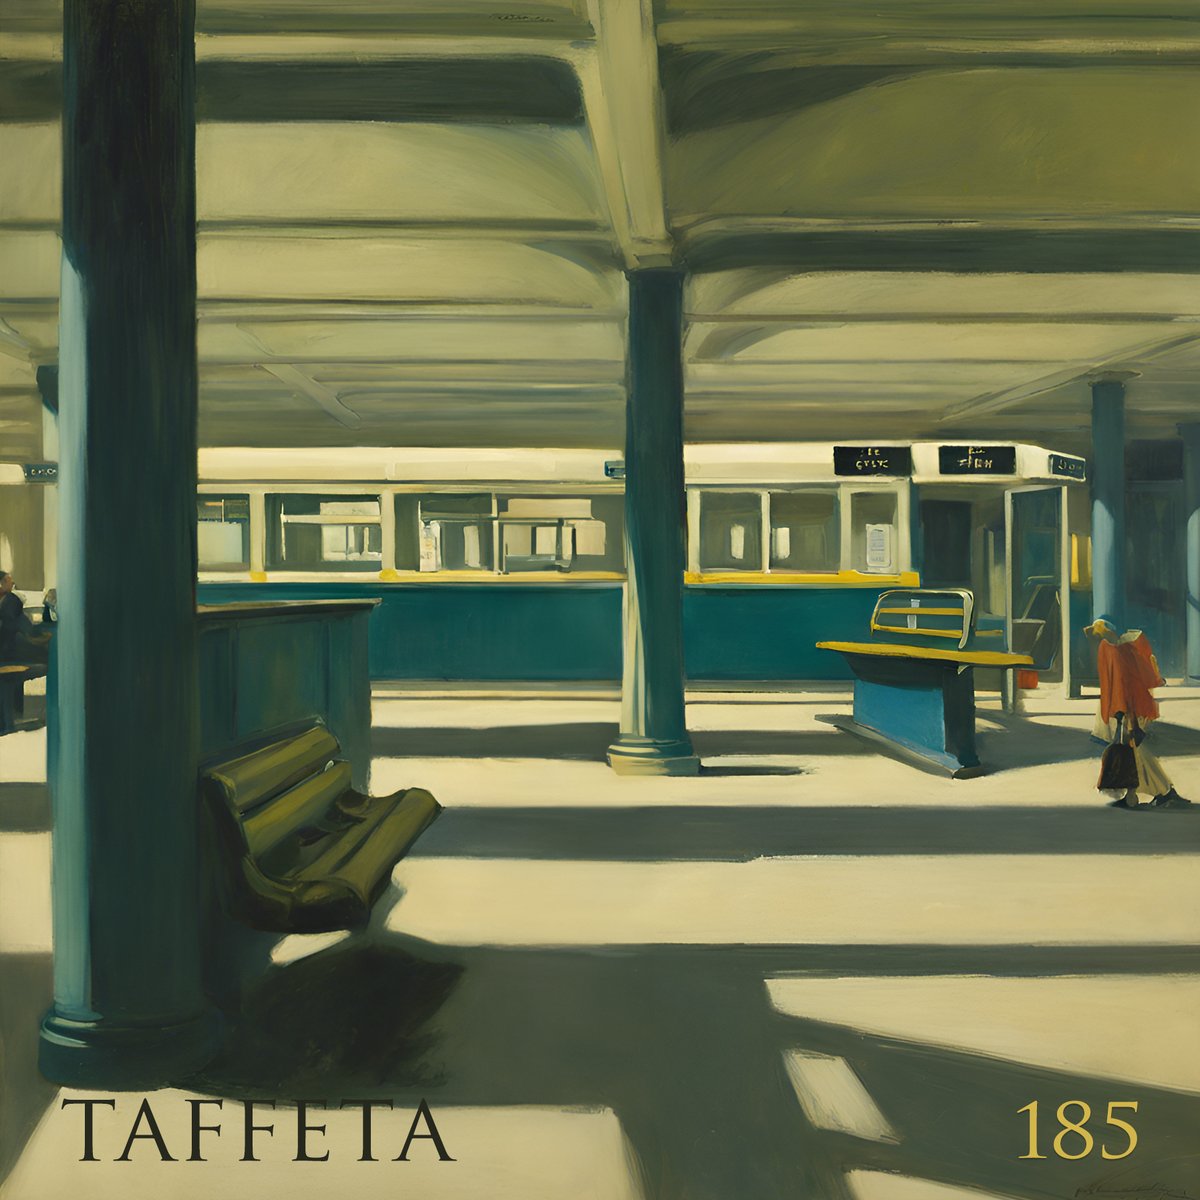 TAFFETA | 185 soundcloud.com/belial-pelegri… #NewMusic